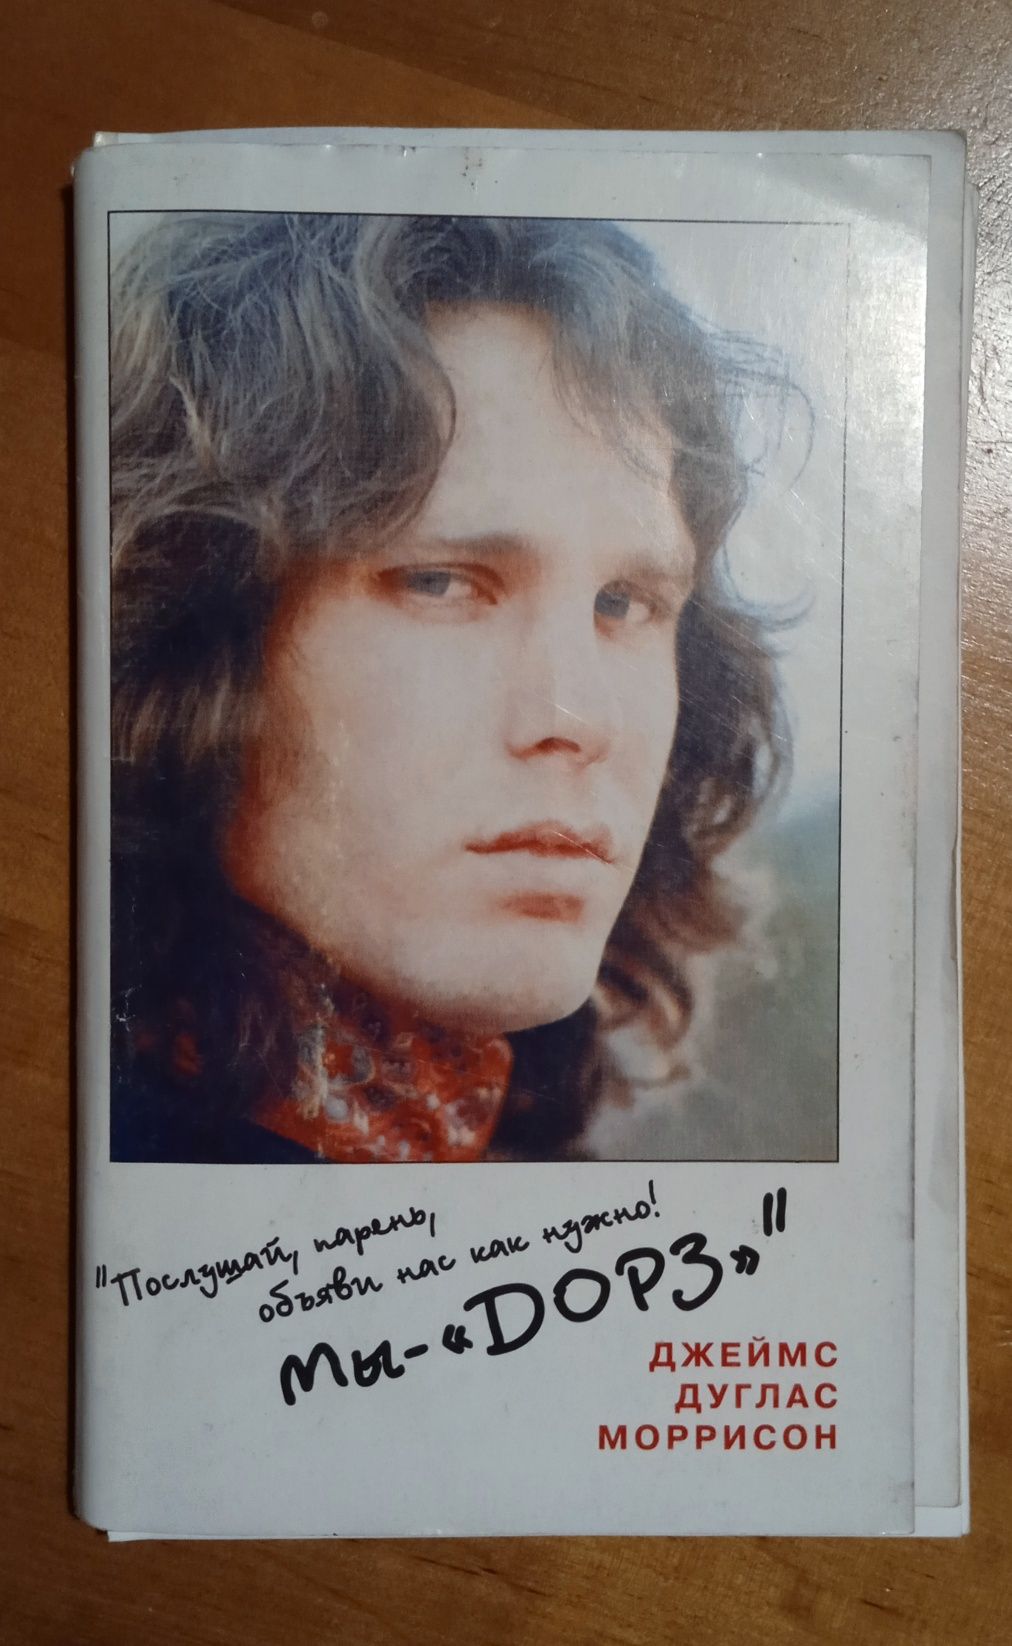 Книга біографія Джима Моррисона, його творчий шлях з гуртом the Doors.